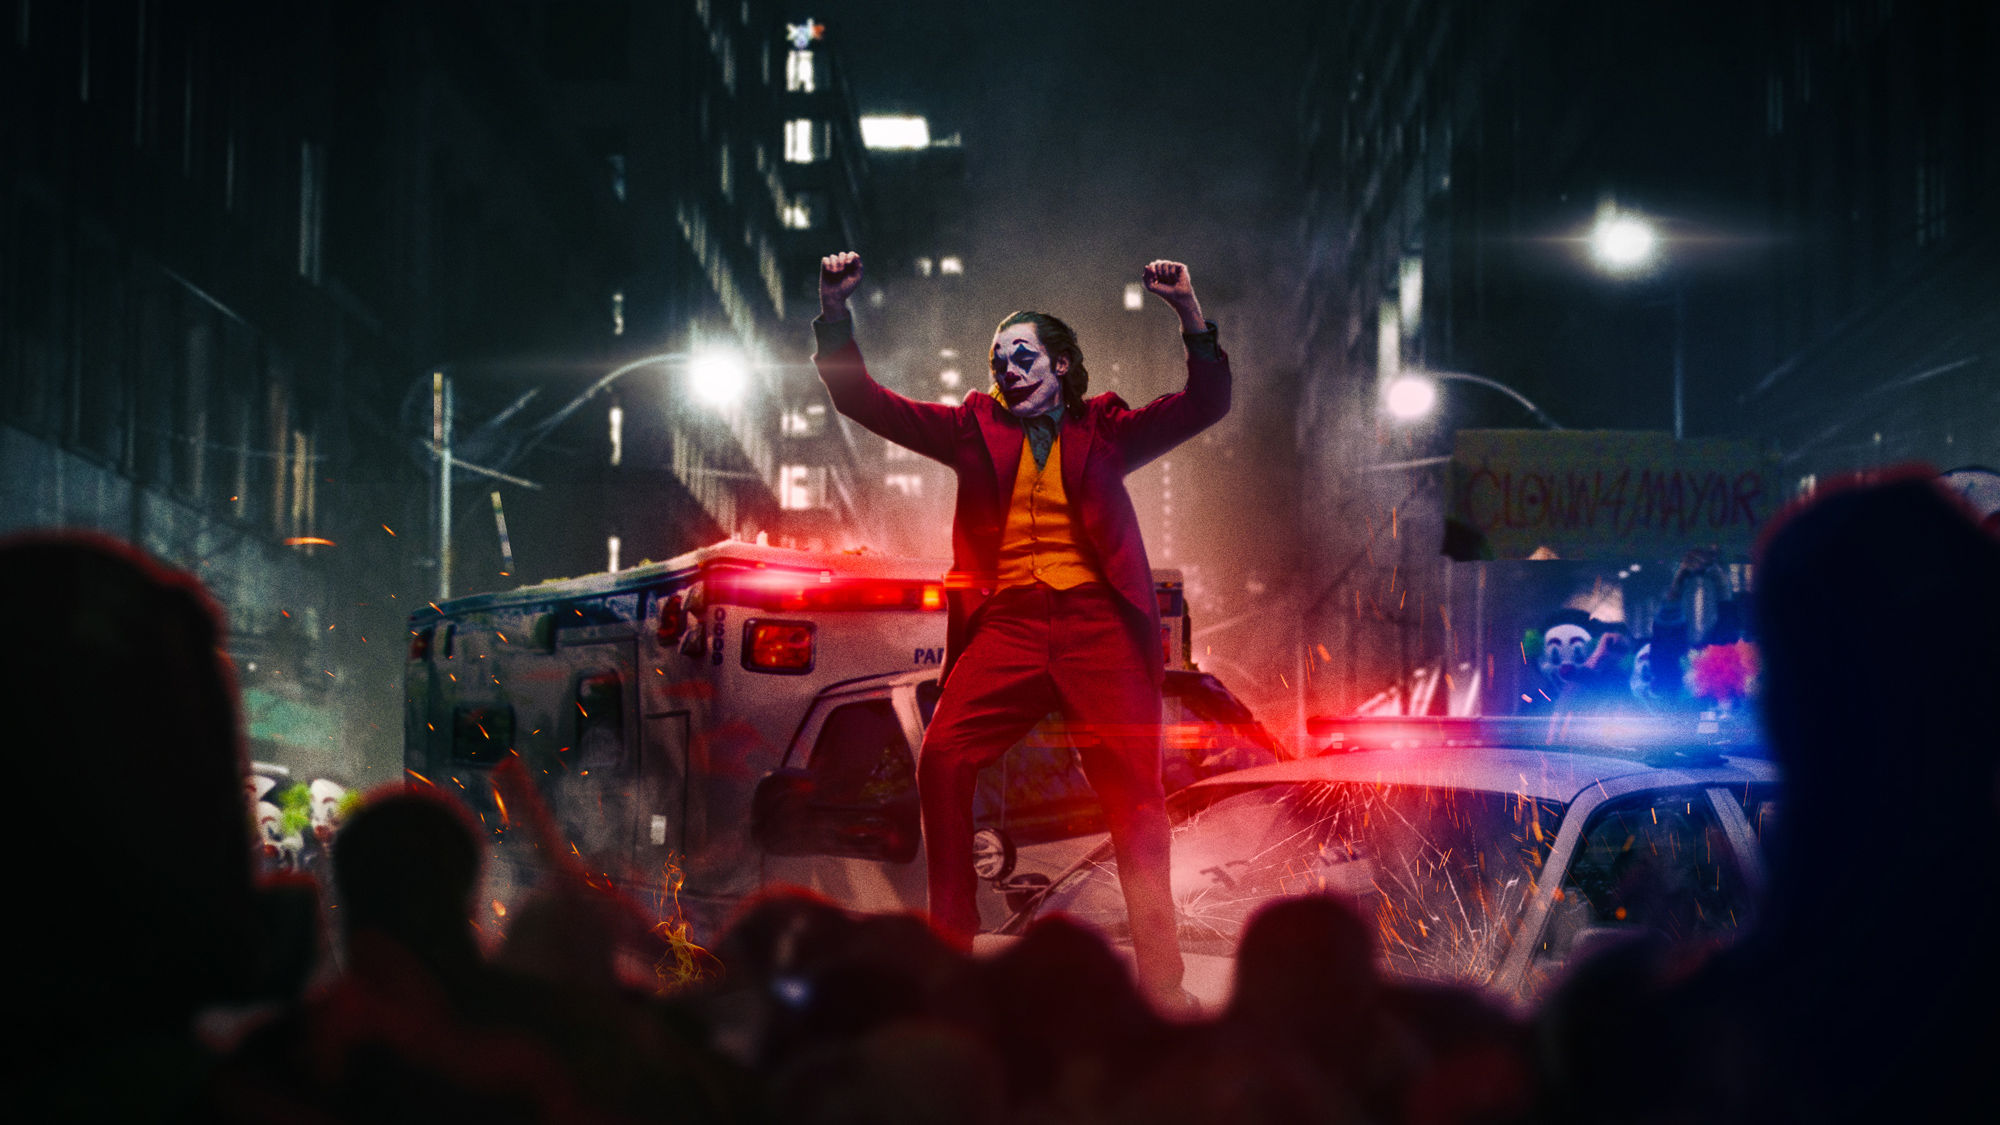 Joker Dancing On Police Car, HD Superheroes, 4k Wallpapers, Images